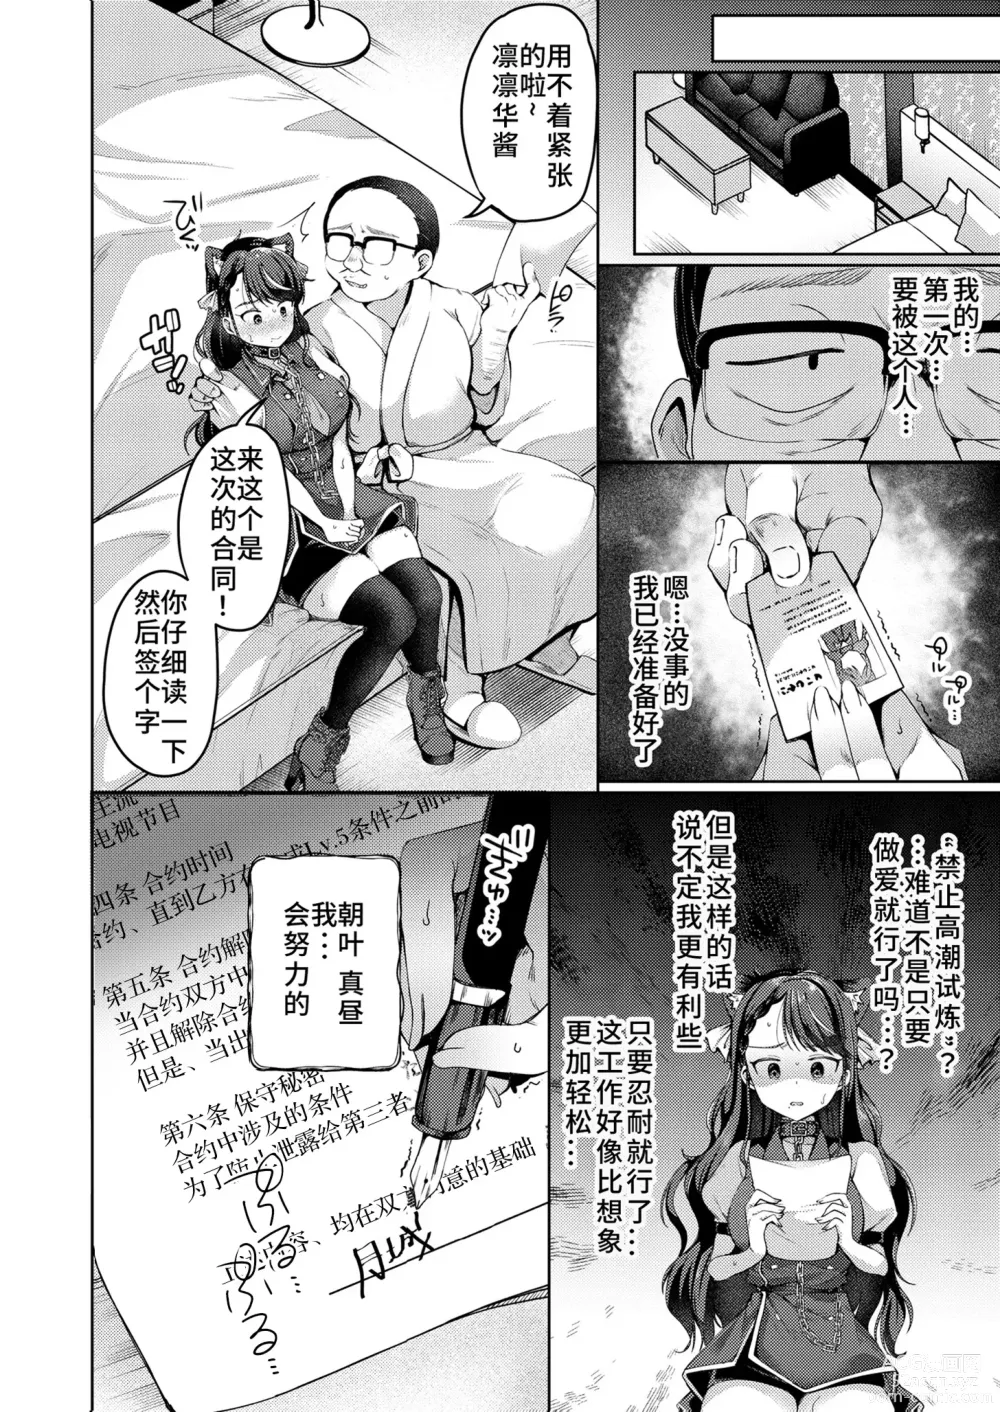 Page 4 of manga Adayume